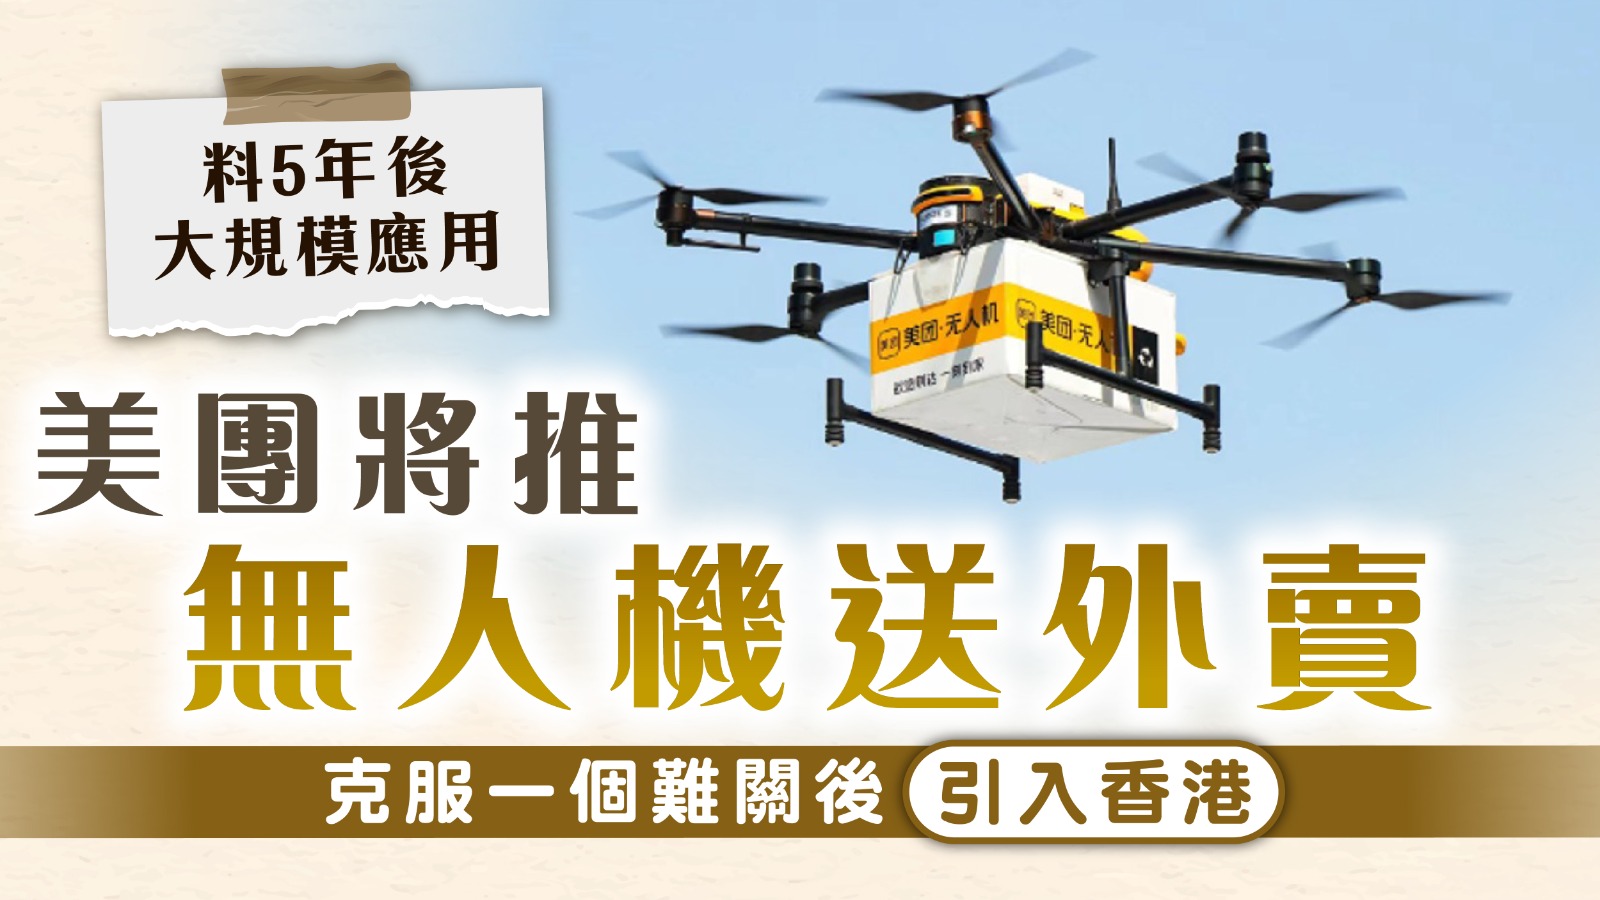 外賣平台｜美團推無人機送外賣 克服一個難關後引入香港